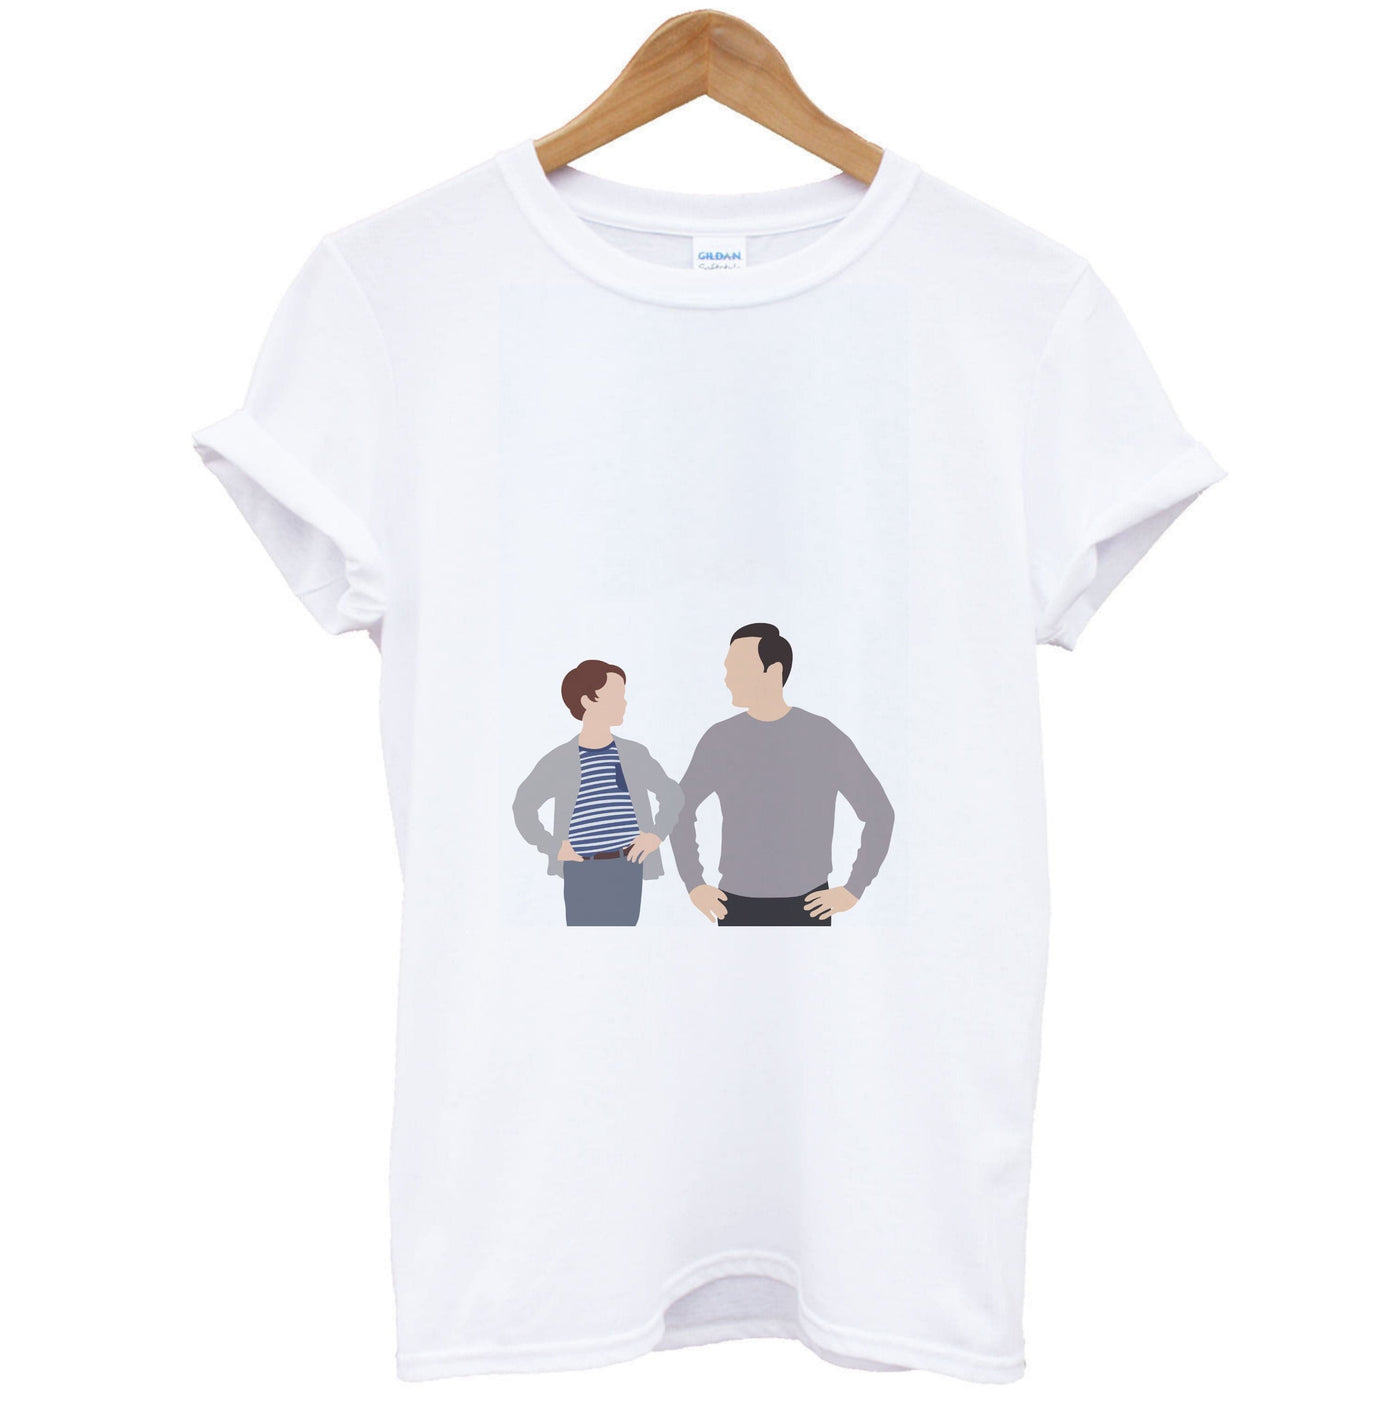 Big And Little Sheldon - Young Sheldon T-Shirt